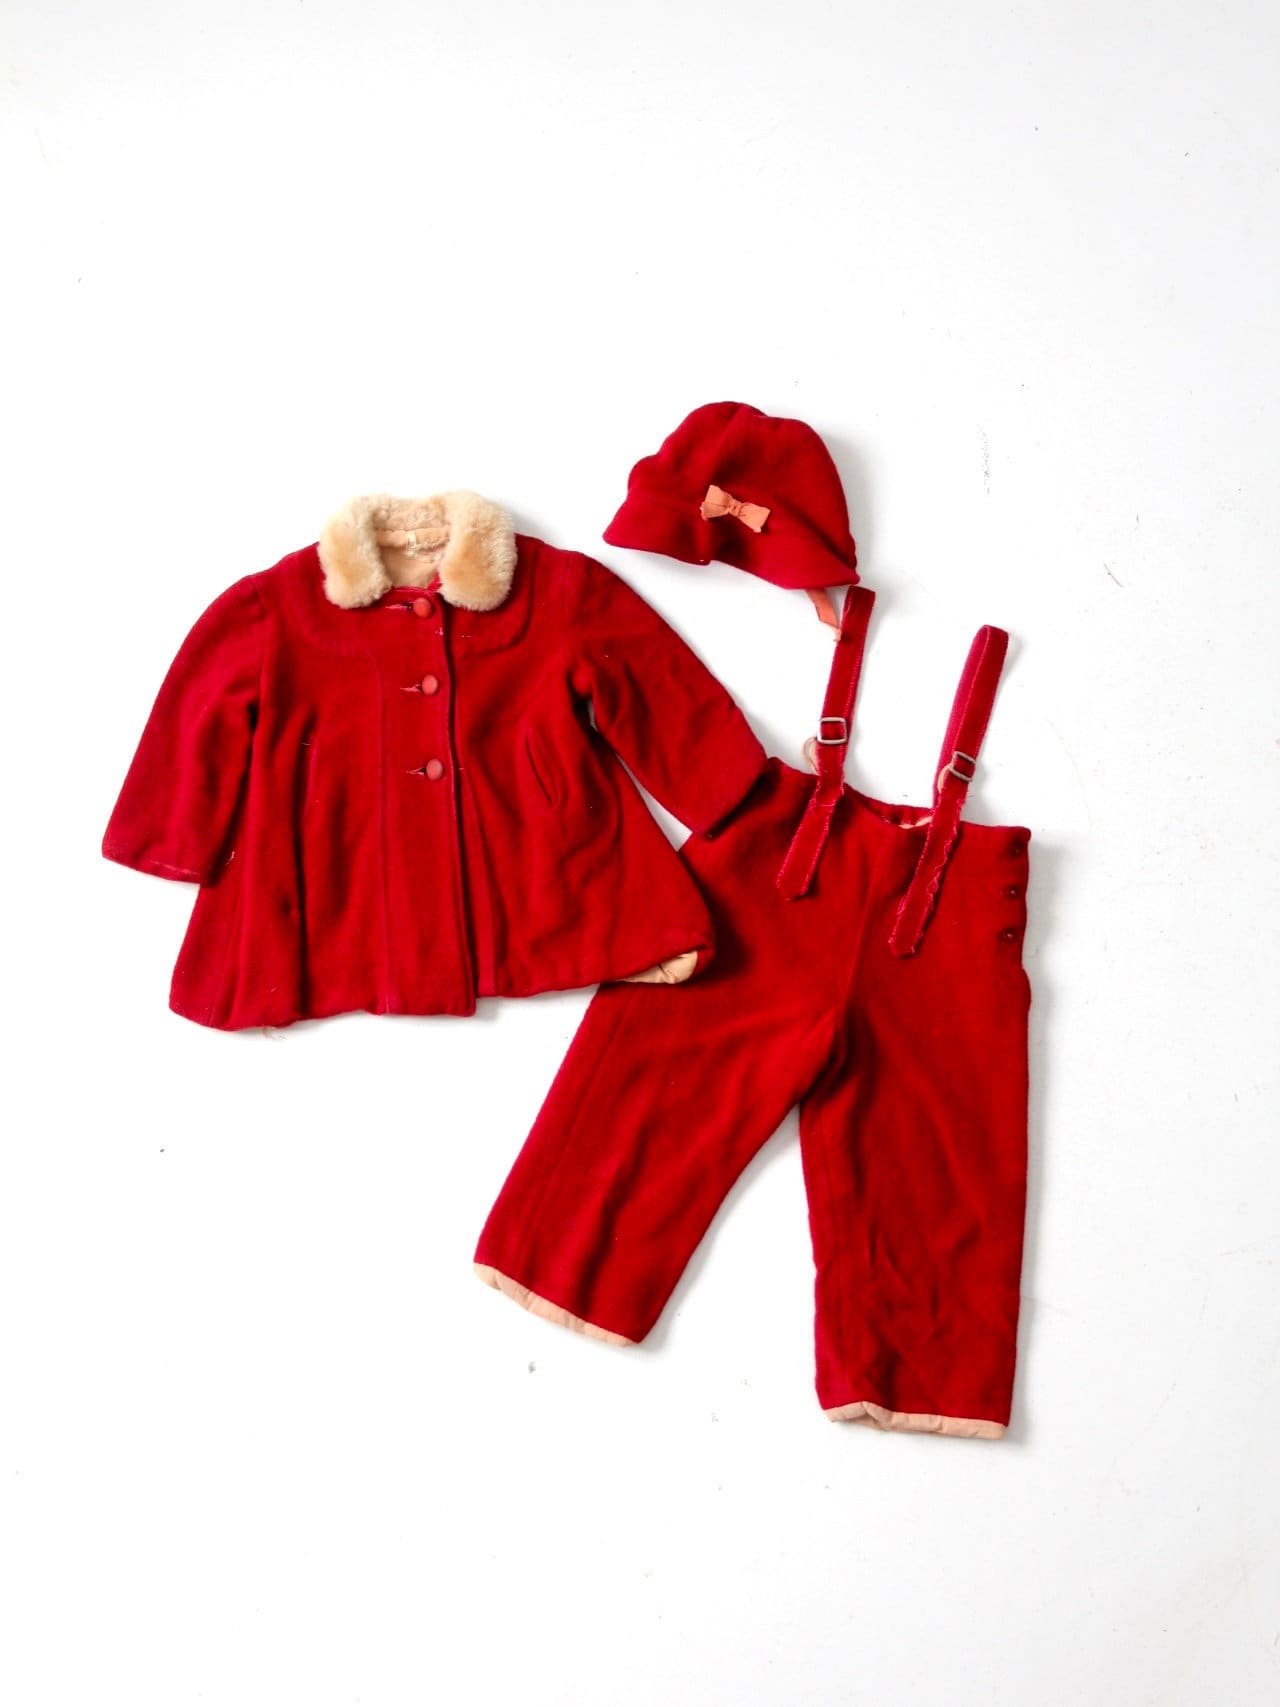 Antikes Kinder Winter Outfit, Roter Wollmantel, Hose Und Mütze von mylittlehuckleberry